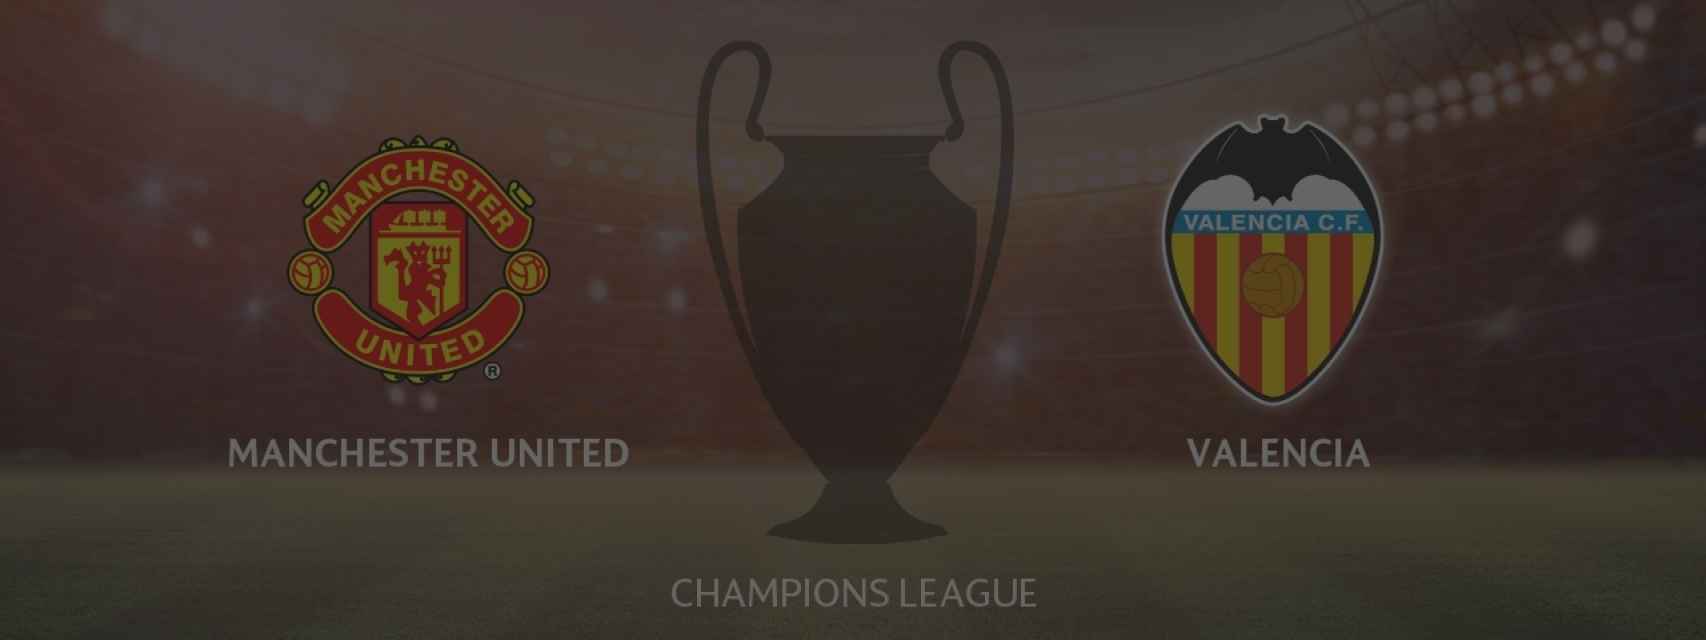 Manchester United - Valencia